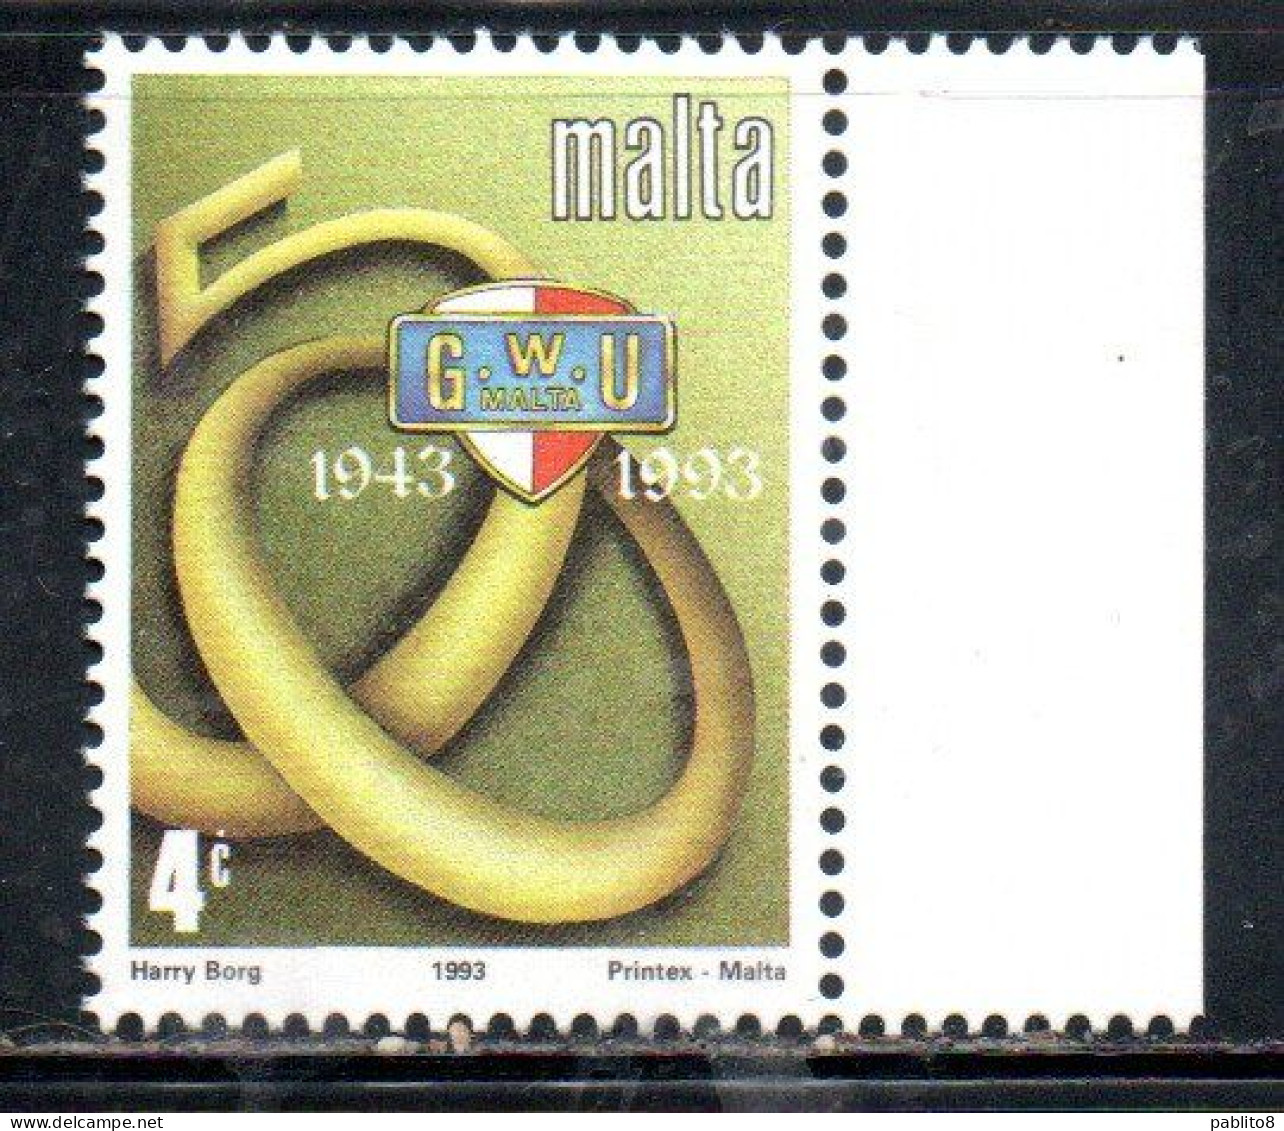 MALTA 1993 GENERAL WORKERS' UNION 50th ANNIVERSARY 4c MNH - Malta